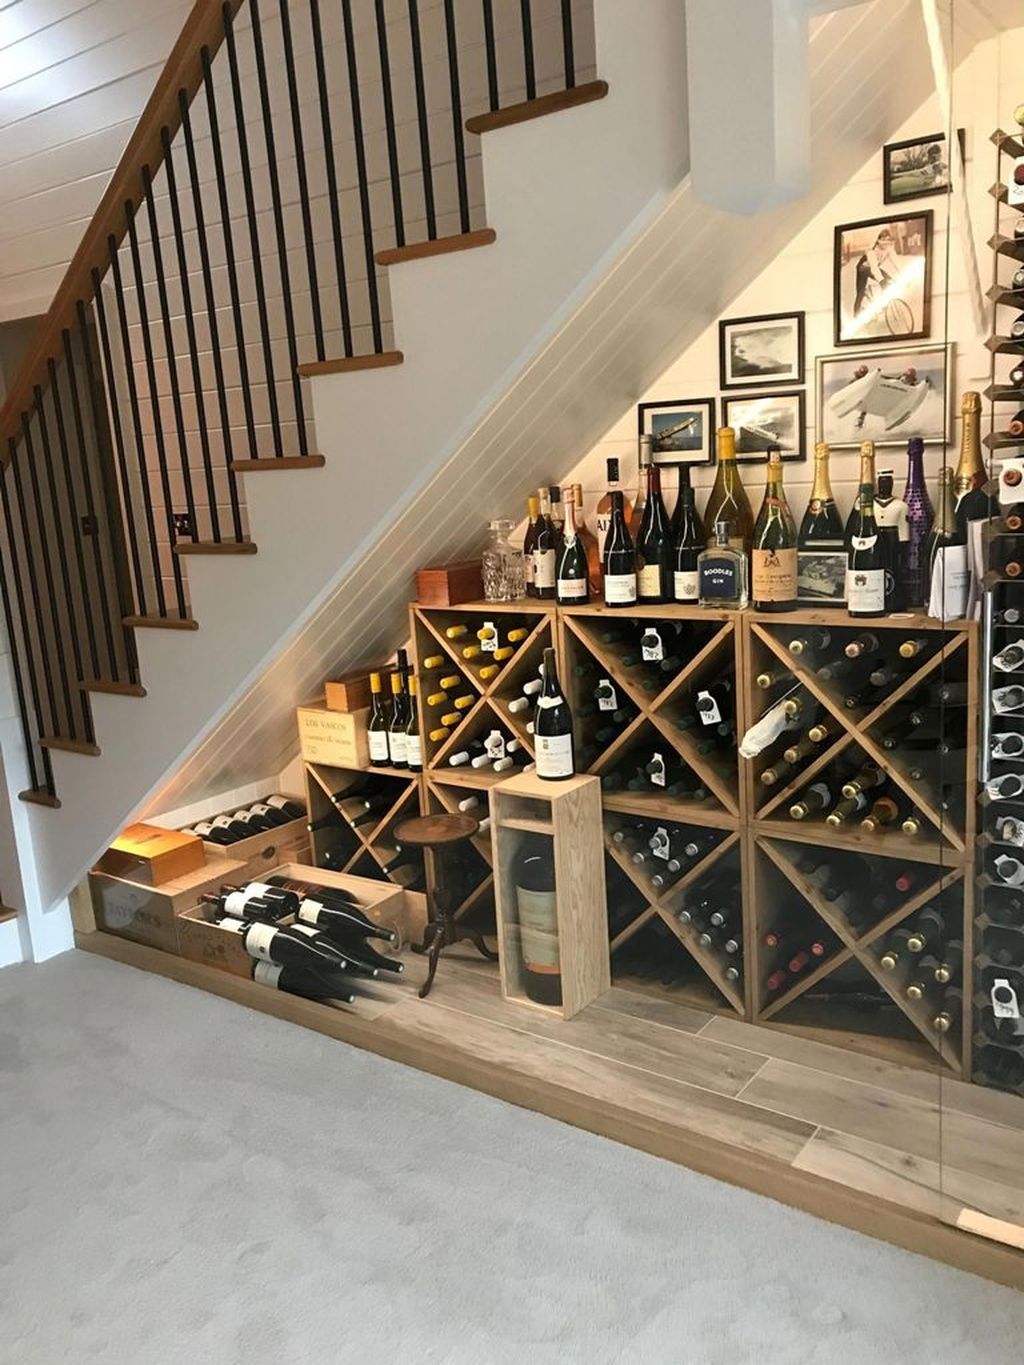 Mẫu kệ rượu dưới gầm cầu thang bằng gỗ, đơn giản mà đẹp